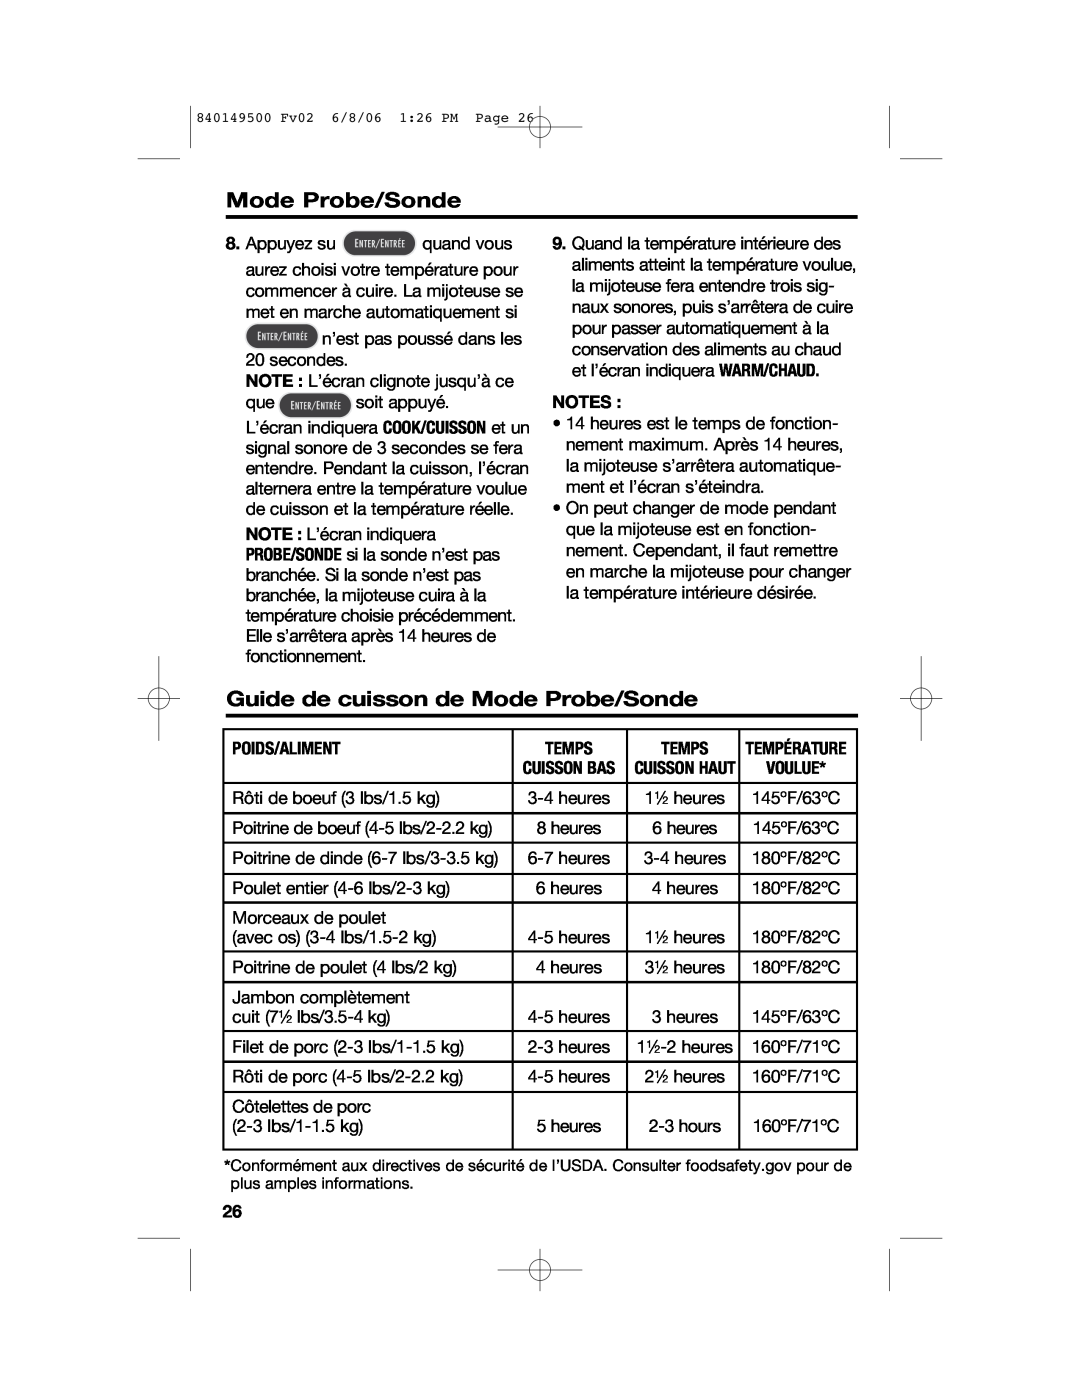 Proctor-Silex 840149500 manual Guide de cuisson de Mode Probe/Sonde, Poids/Aliment, Temps 